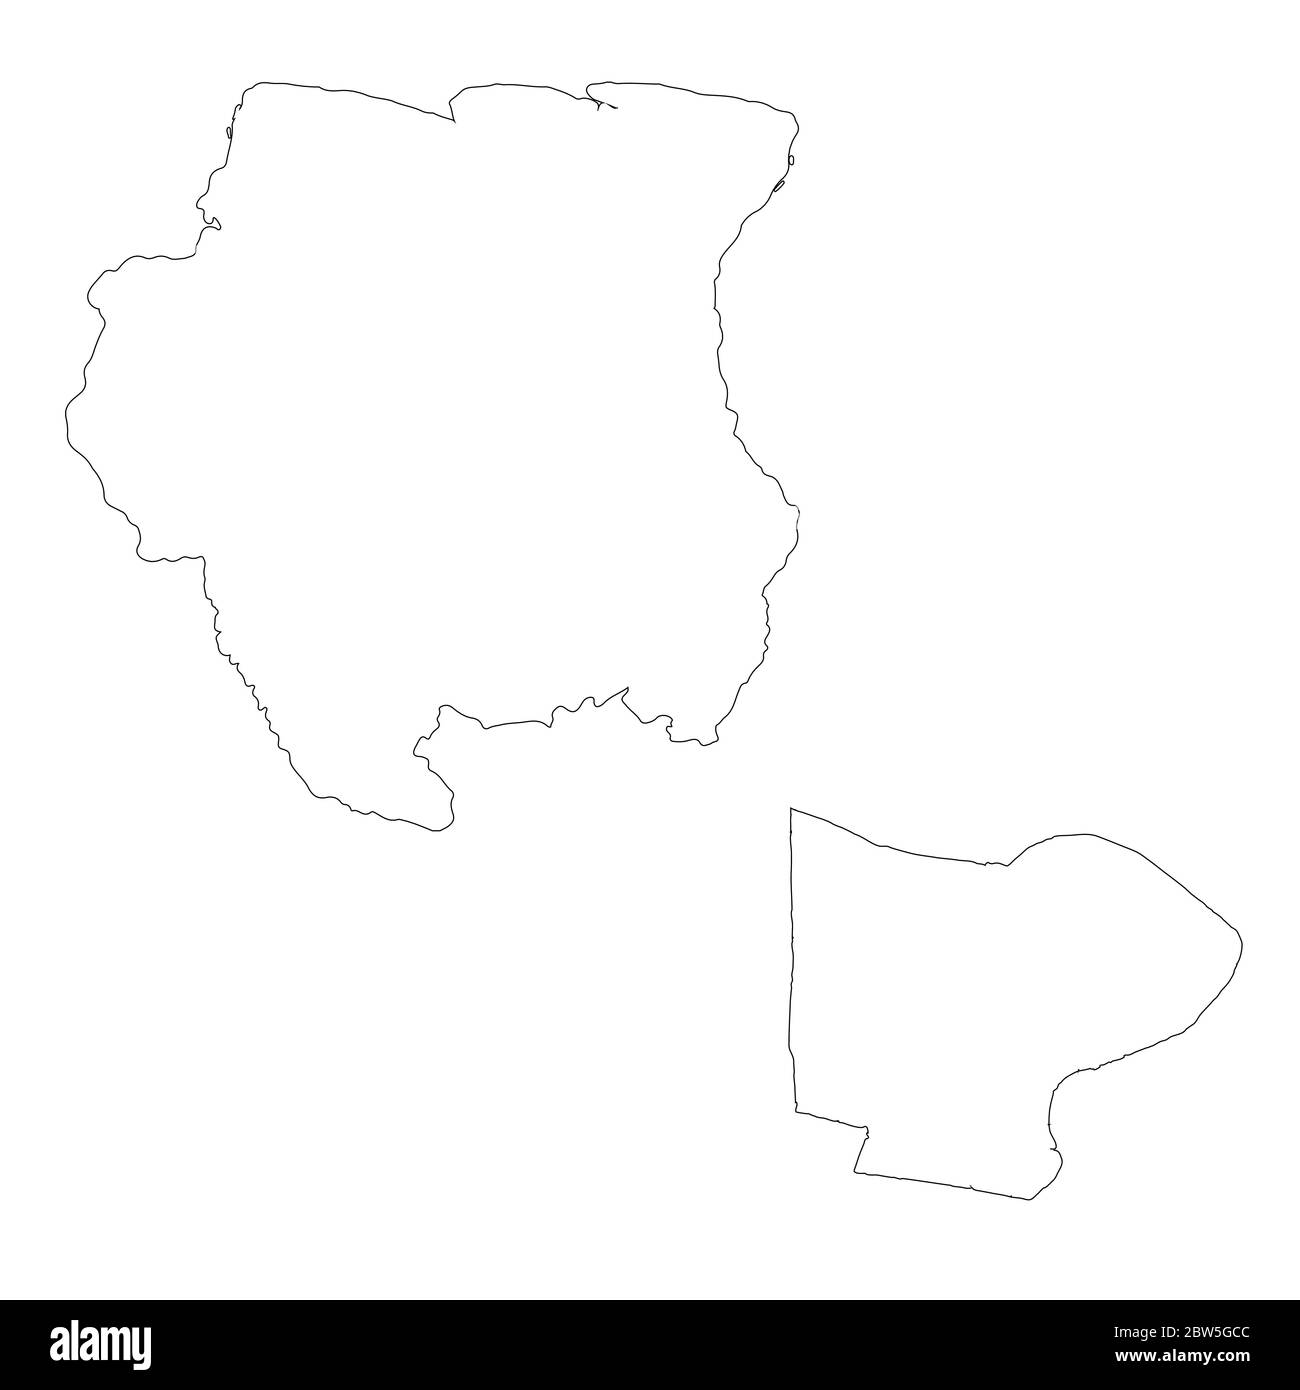 Vektorkarte Suriname und Paramaribo. Land und Hauptstadt. Isolierte Vektorgrafik. Übersicht. EPS 10-Abbildung. Stock Vektor